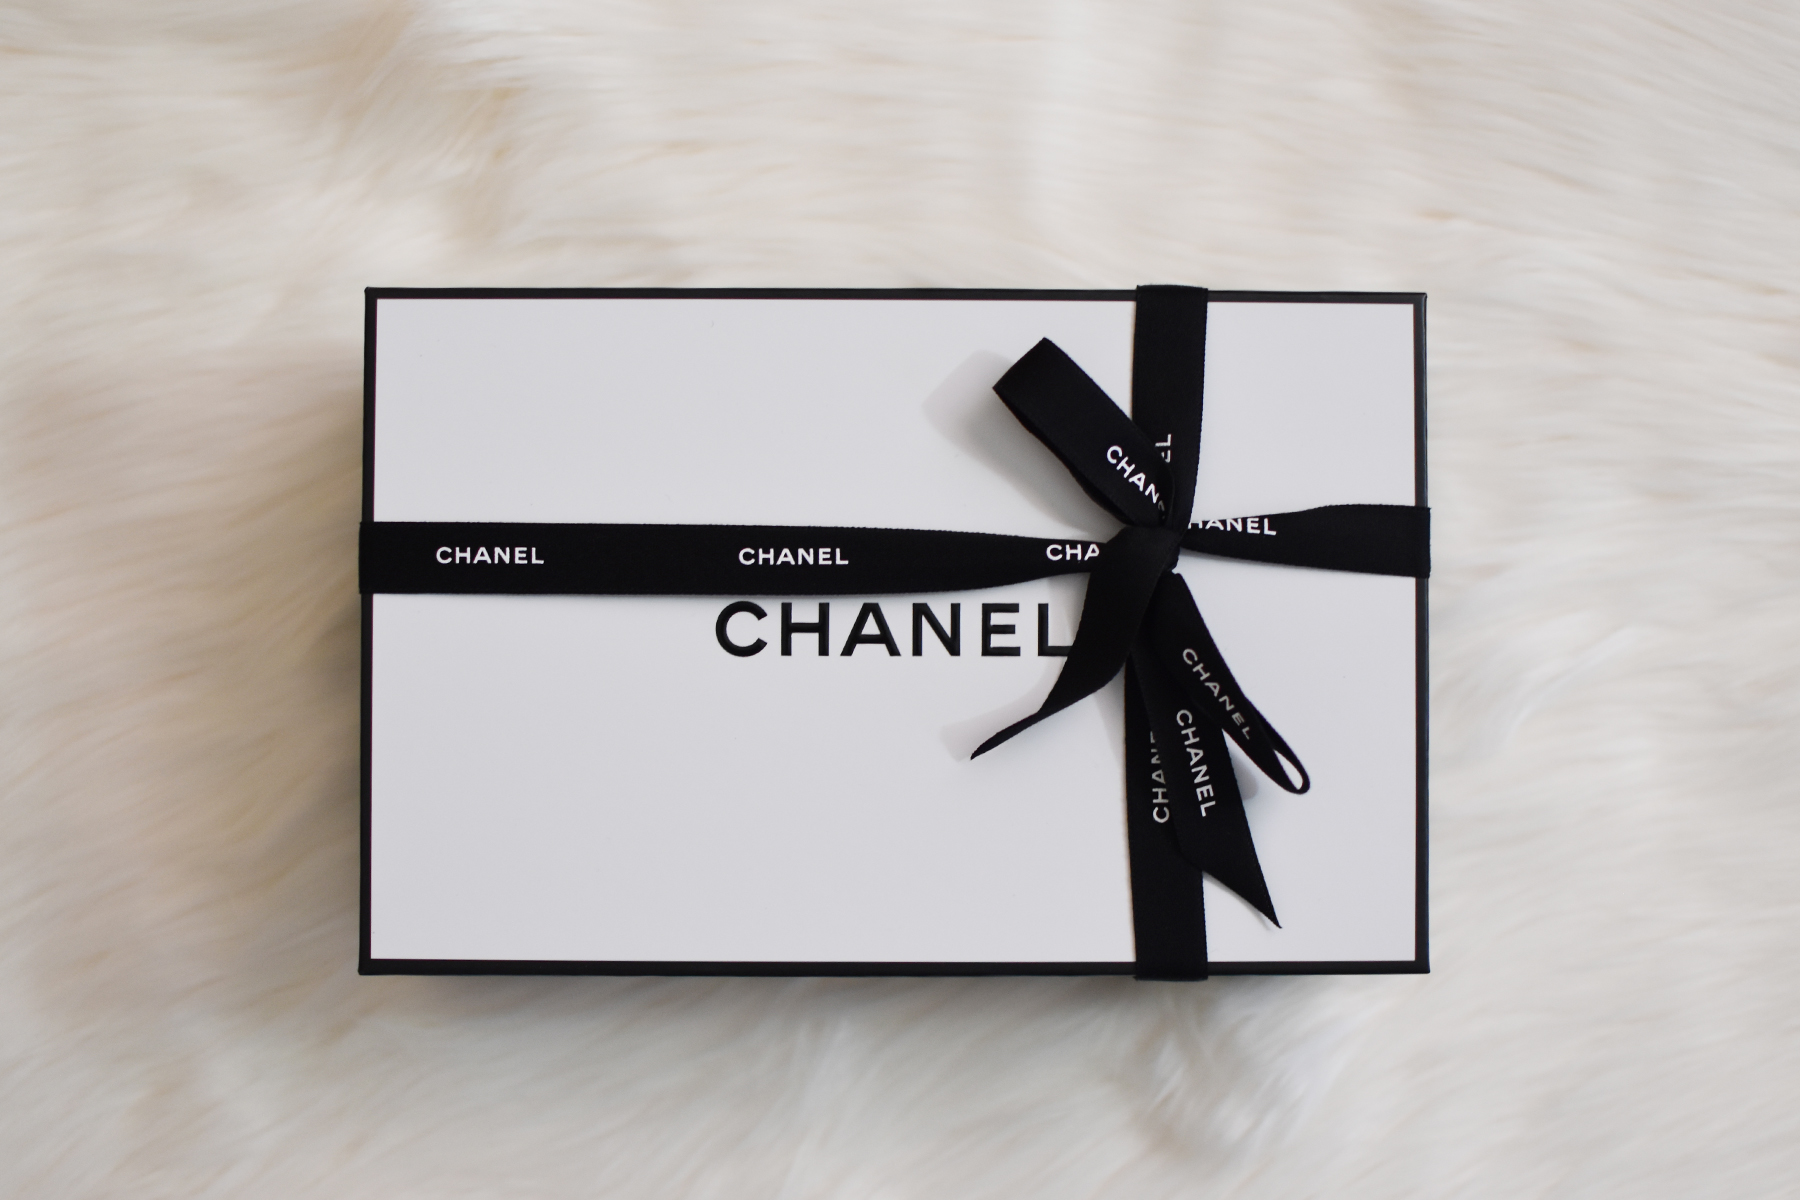 Chanel Beauty Haul